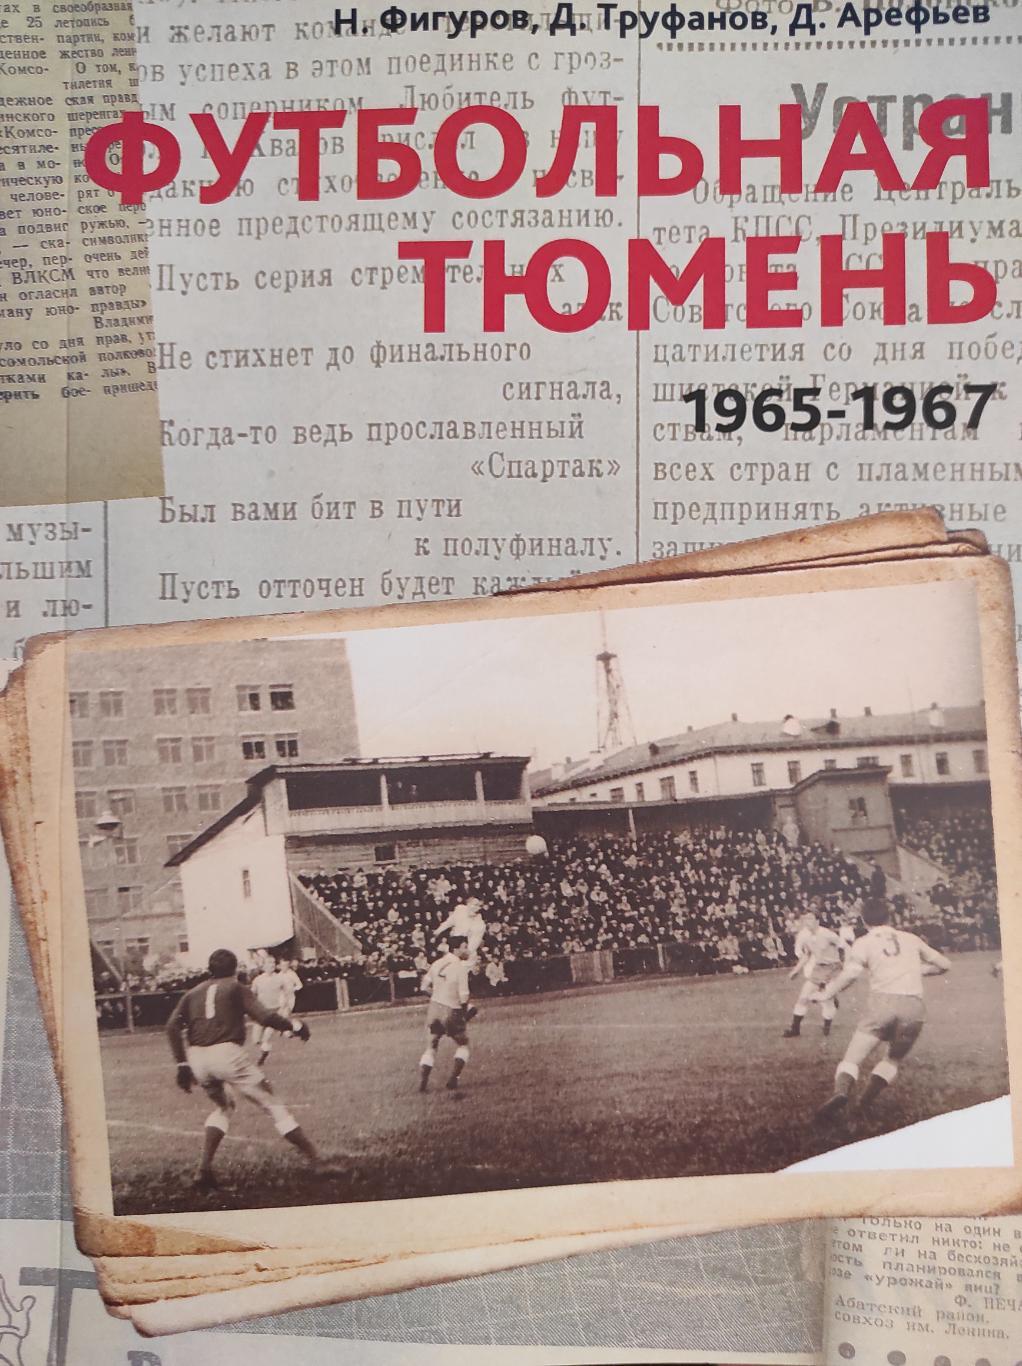 Футбольная Тюмень. Продолжение летописи. 1965-1967 годы.